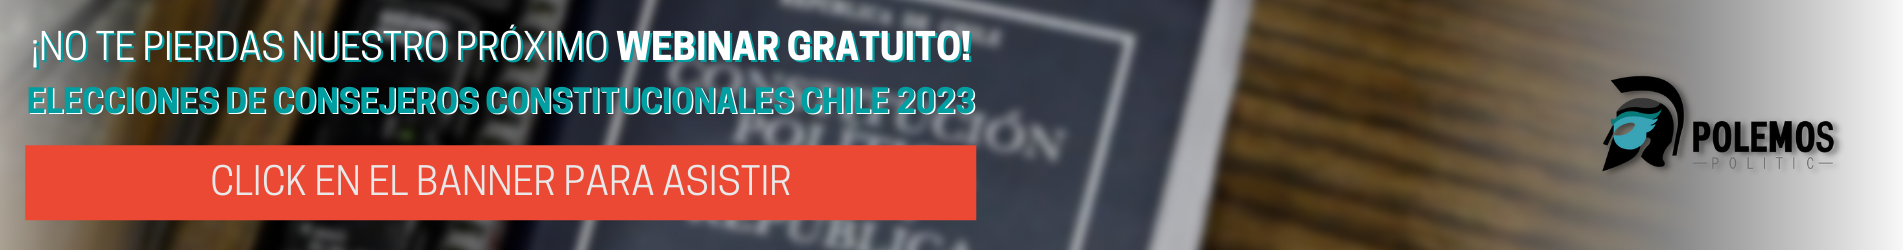 ELECCIONES DE CONSEJEROS CONSTITUCIONALES CHILE 2023